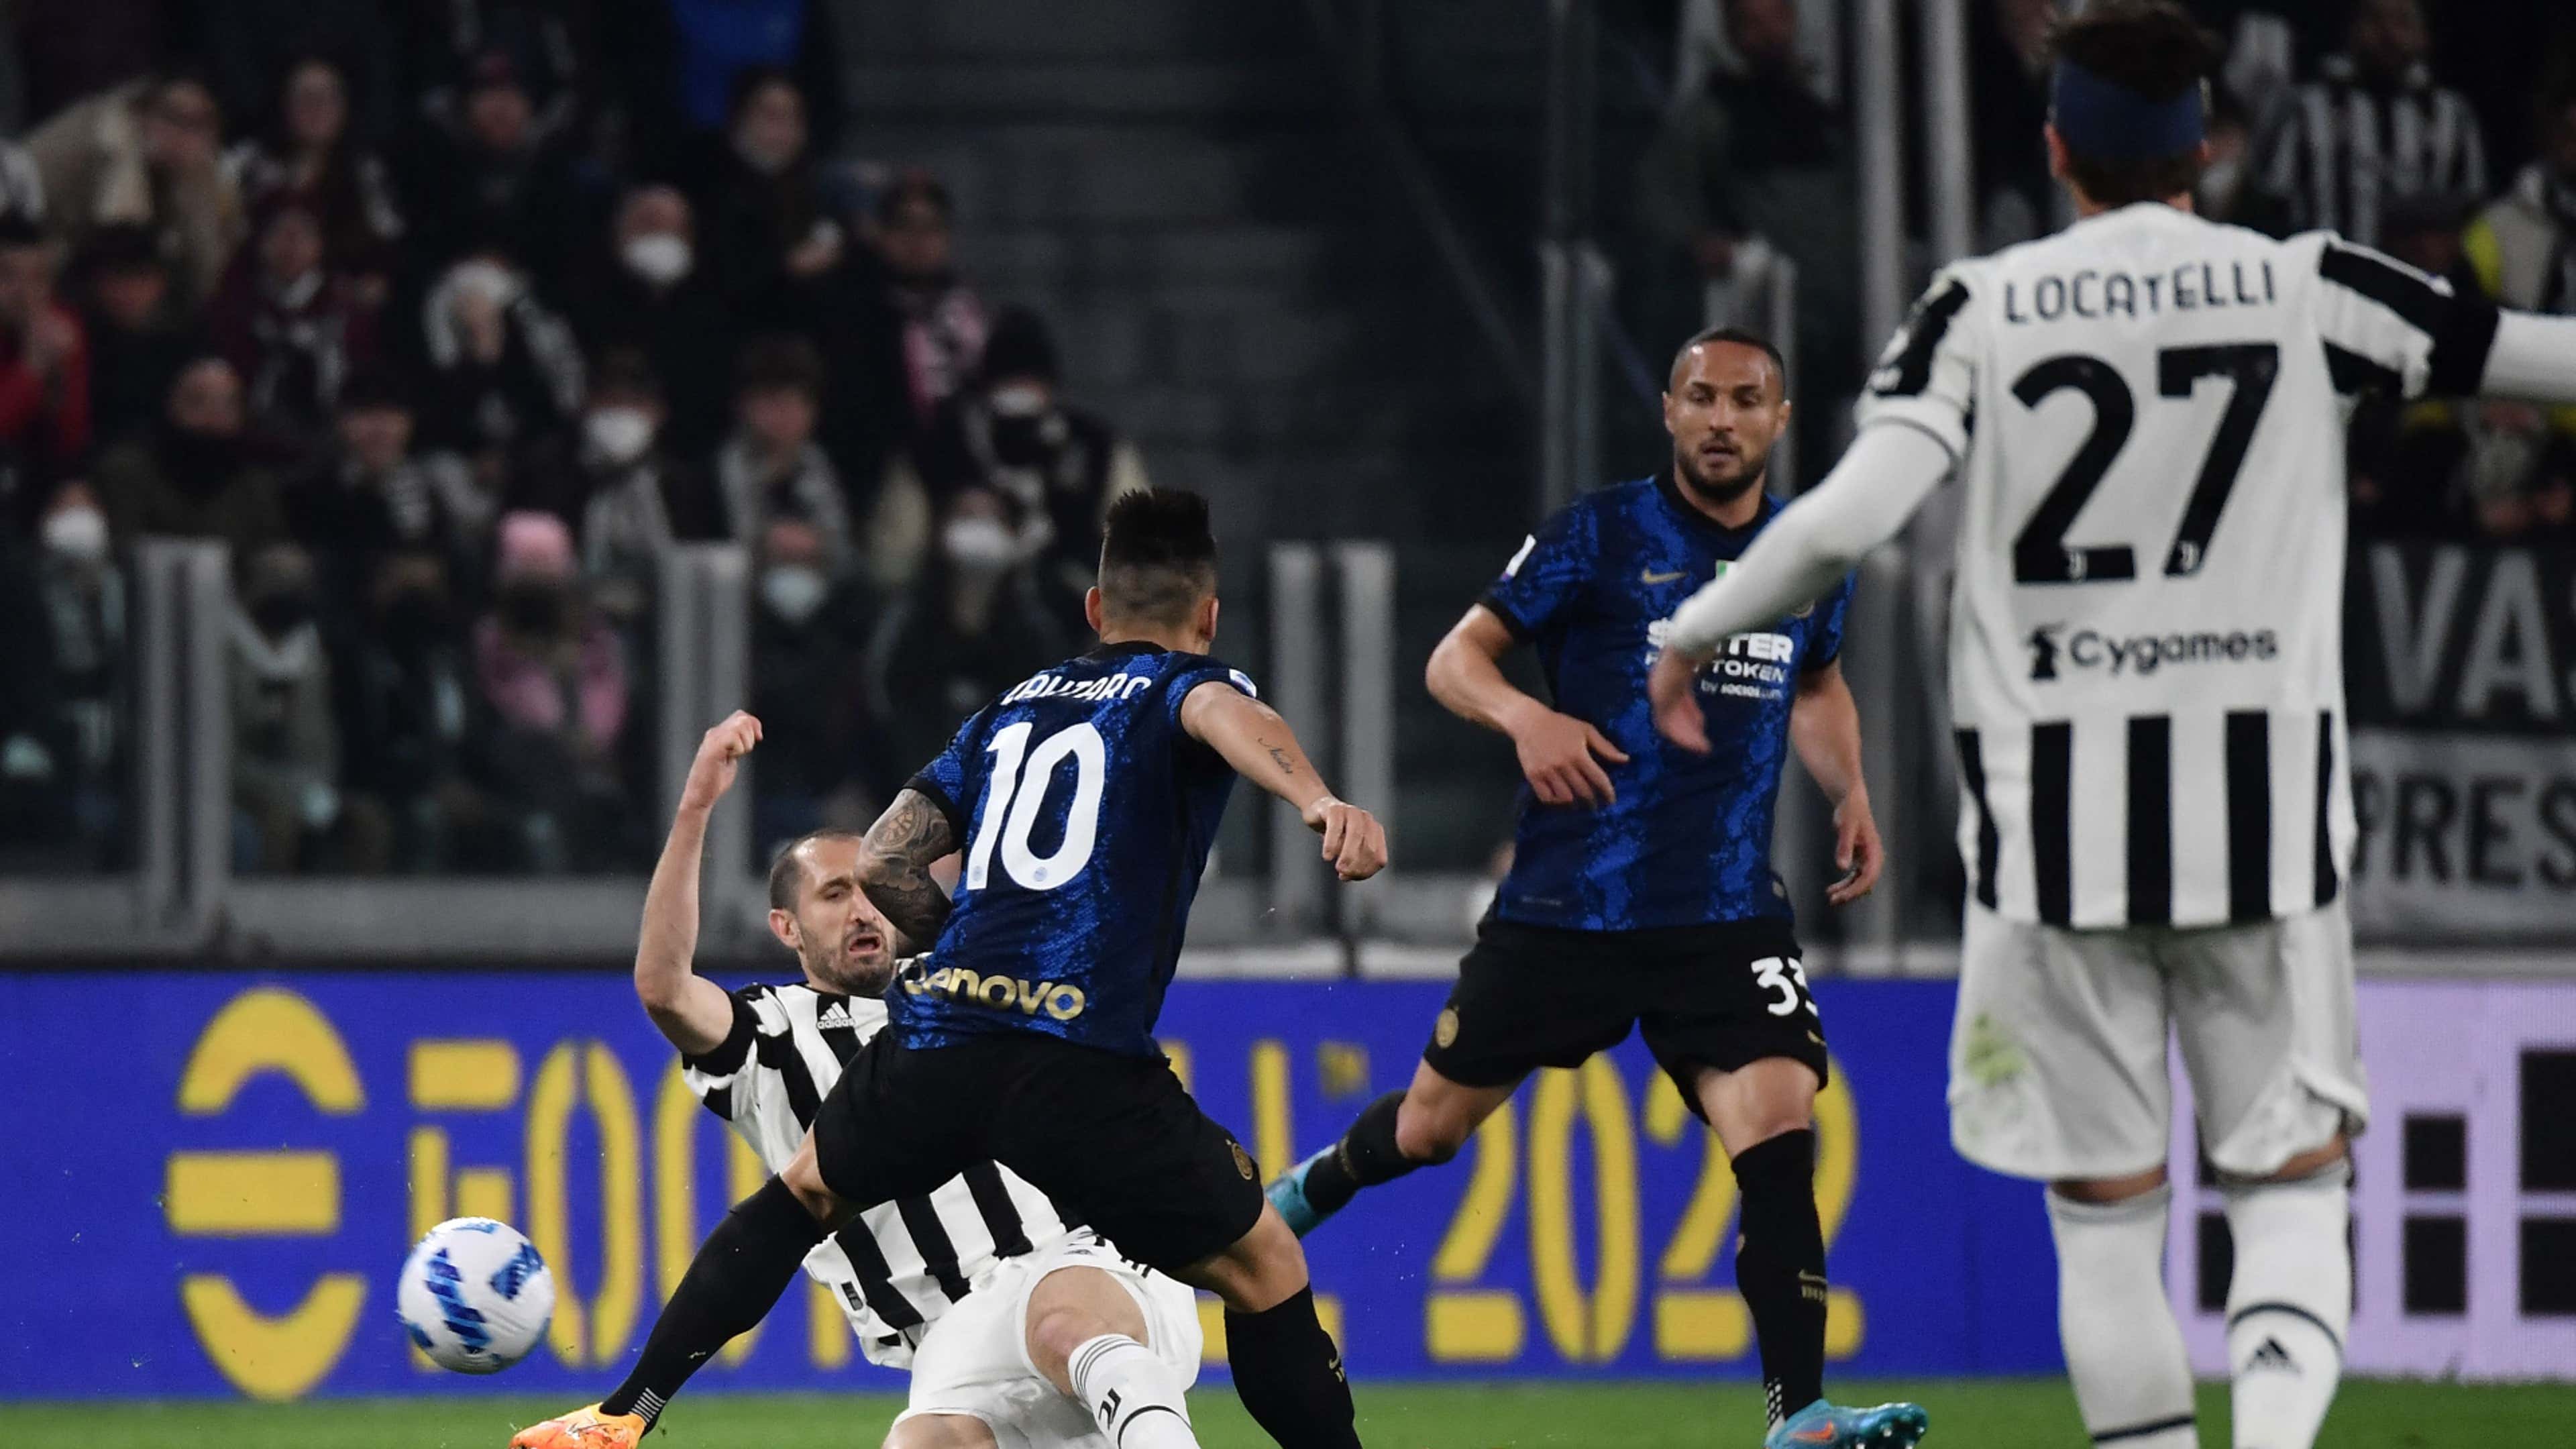 Juventus x Torino: onde assistir ao vivo, prováveis escalações, hora e  local; derby decisivo na Itália